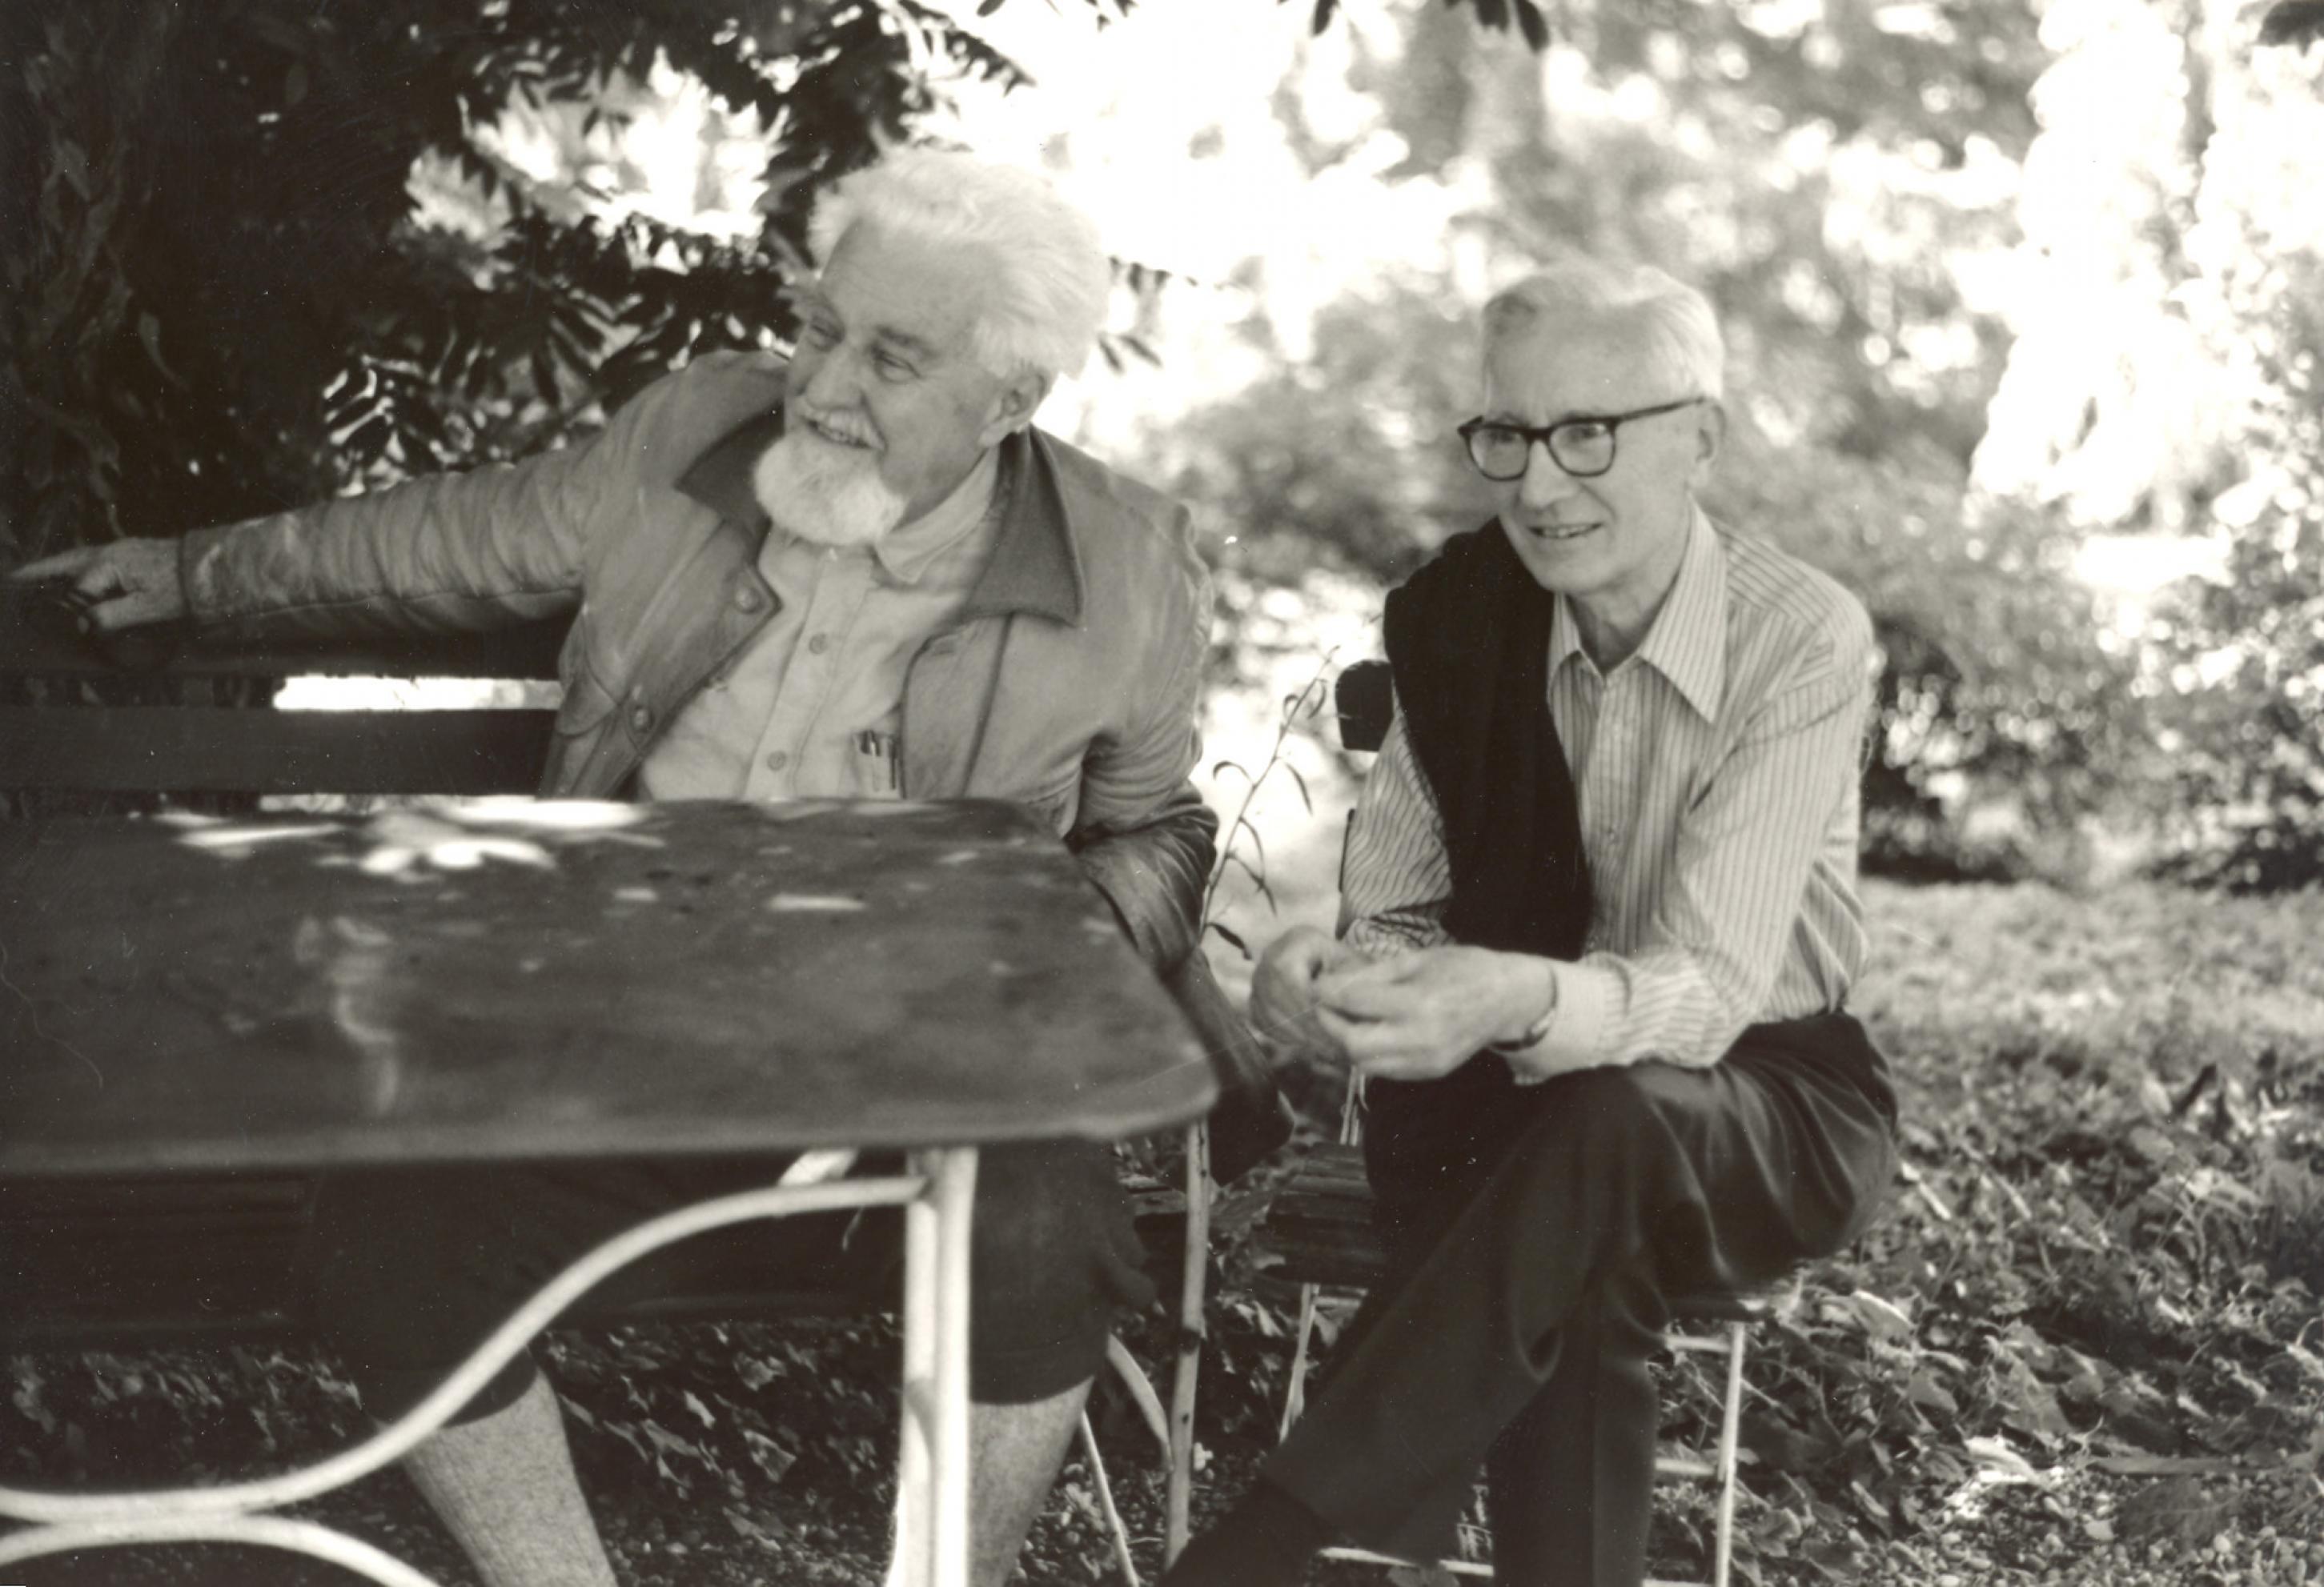 Das Bild zeigt die beiden Wissenschaftler Nikolaas Tinbergen und Konrad Lorenz in einem Garten an einem Tisch sitzend.